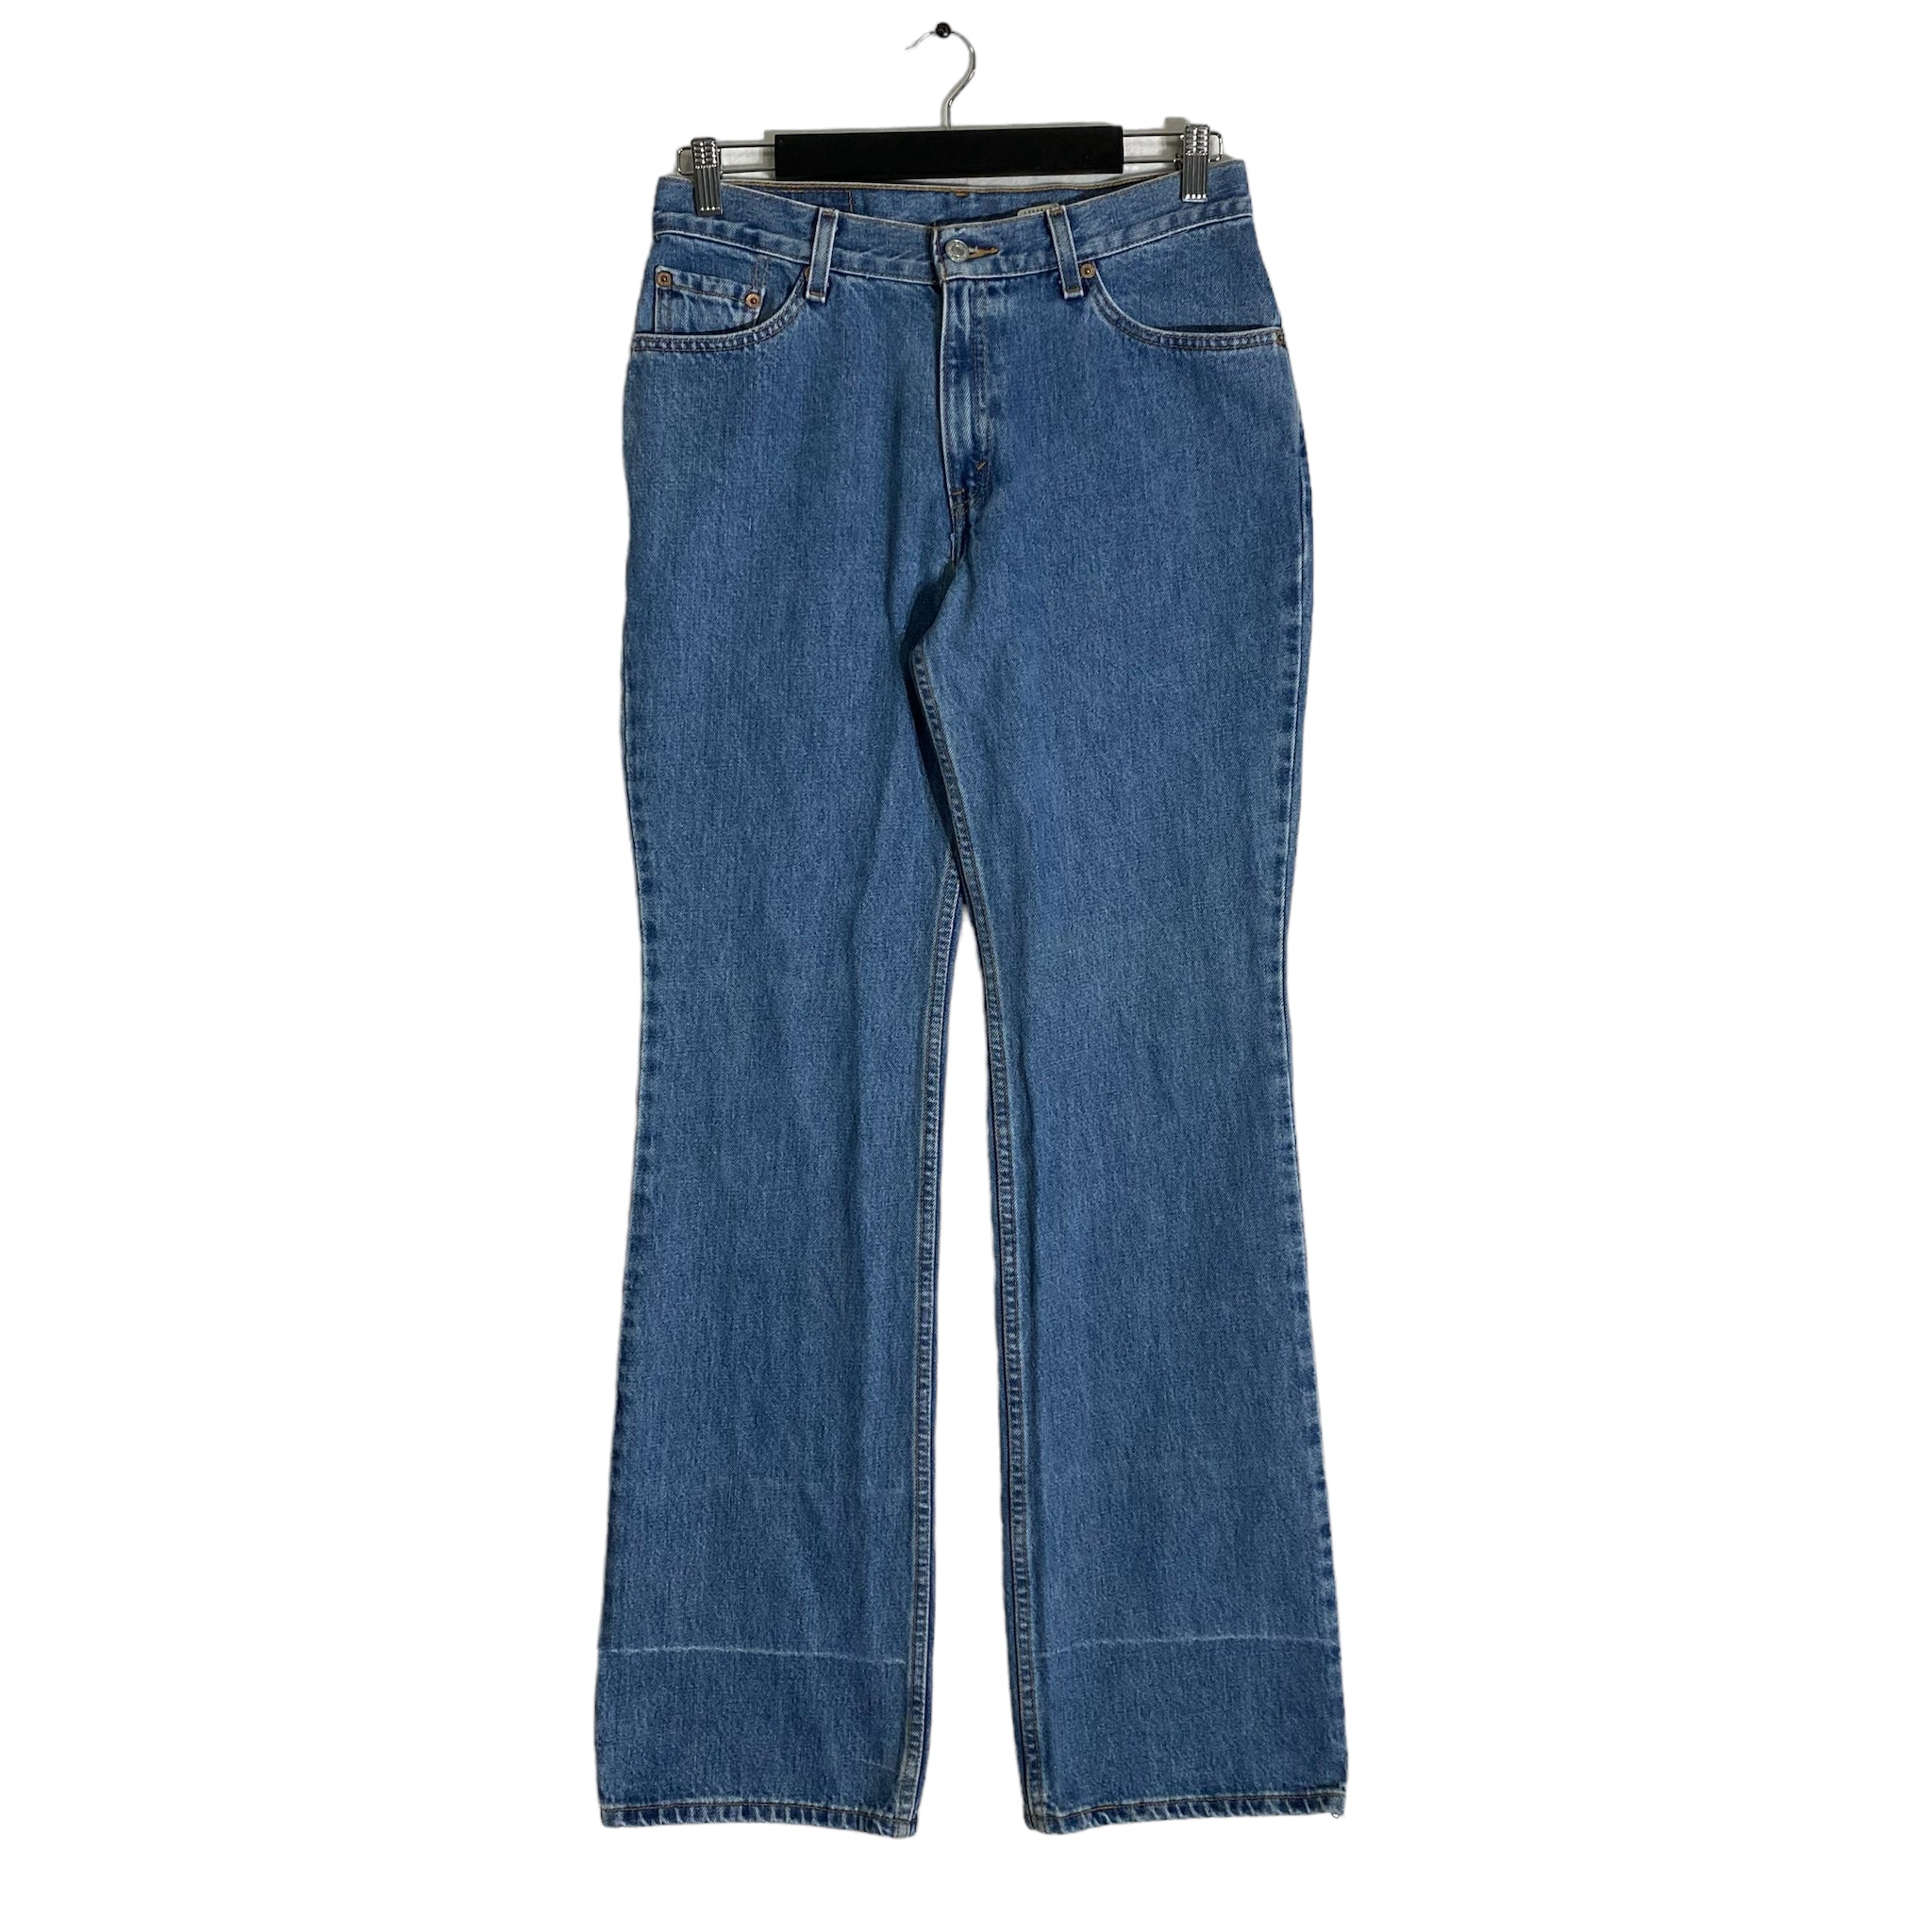 Vintage Levi's 517 Boot Cut Women's Jeans